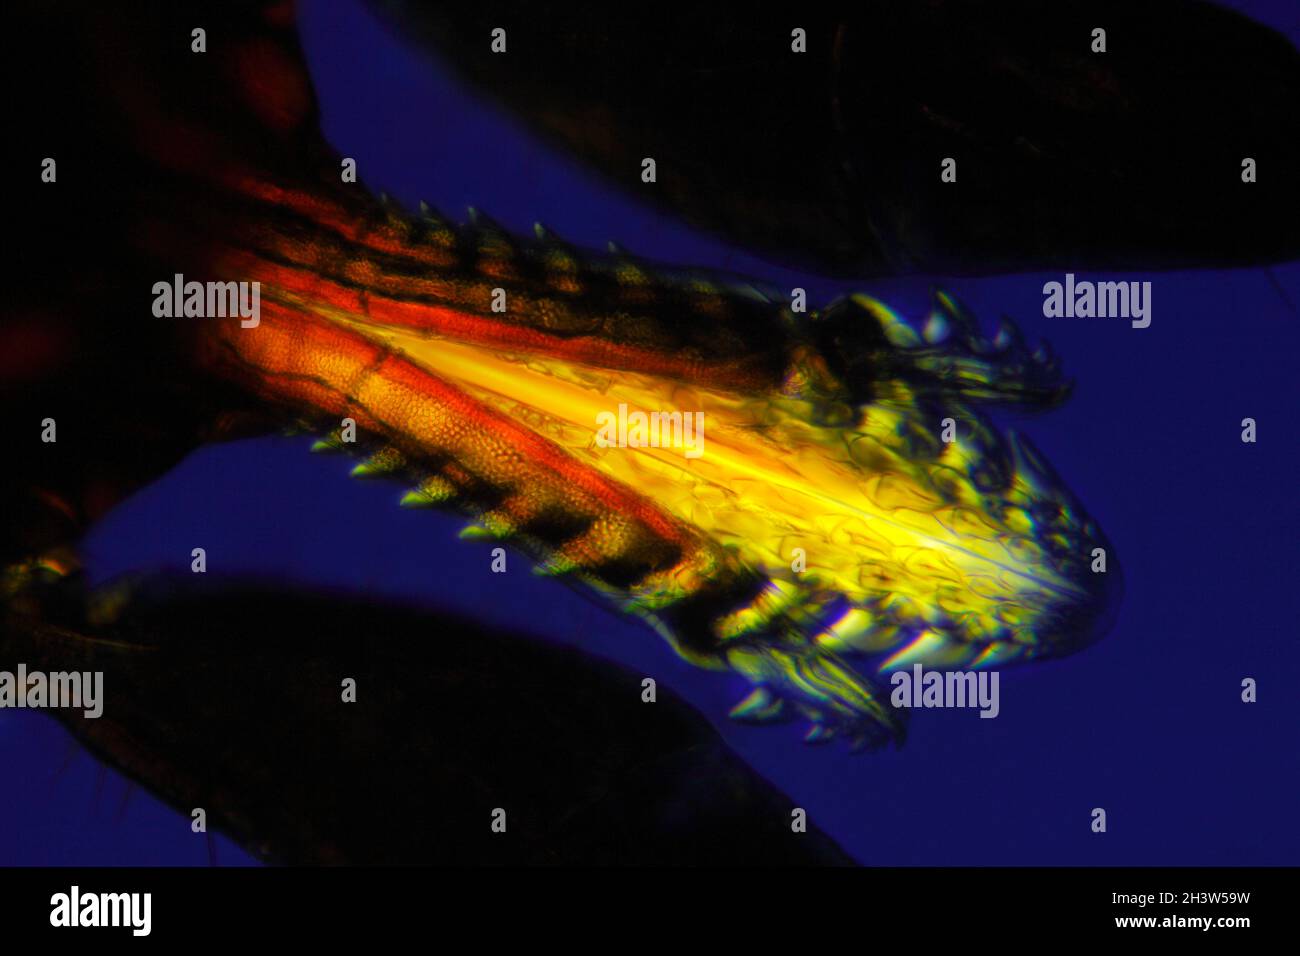 Mikroskopische Ansicht eines Maul einer Zecke (Ixodidae, harte Zecke). Polarisiertes Licht mit gekreuzten Polarisatoren. Stockfoto